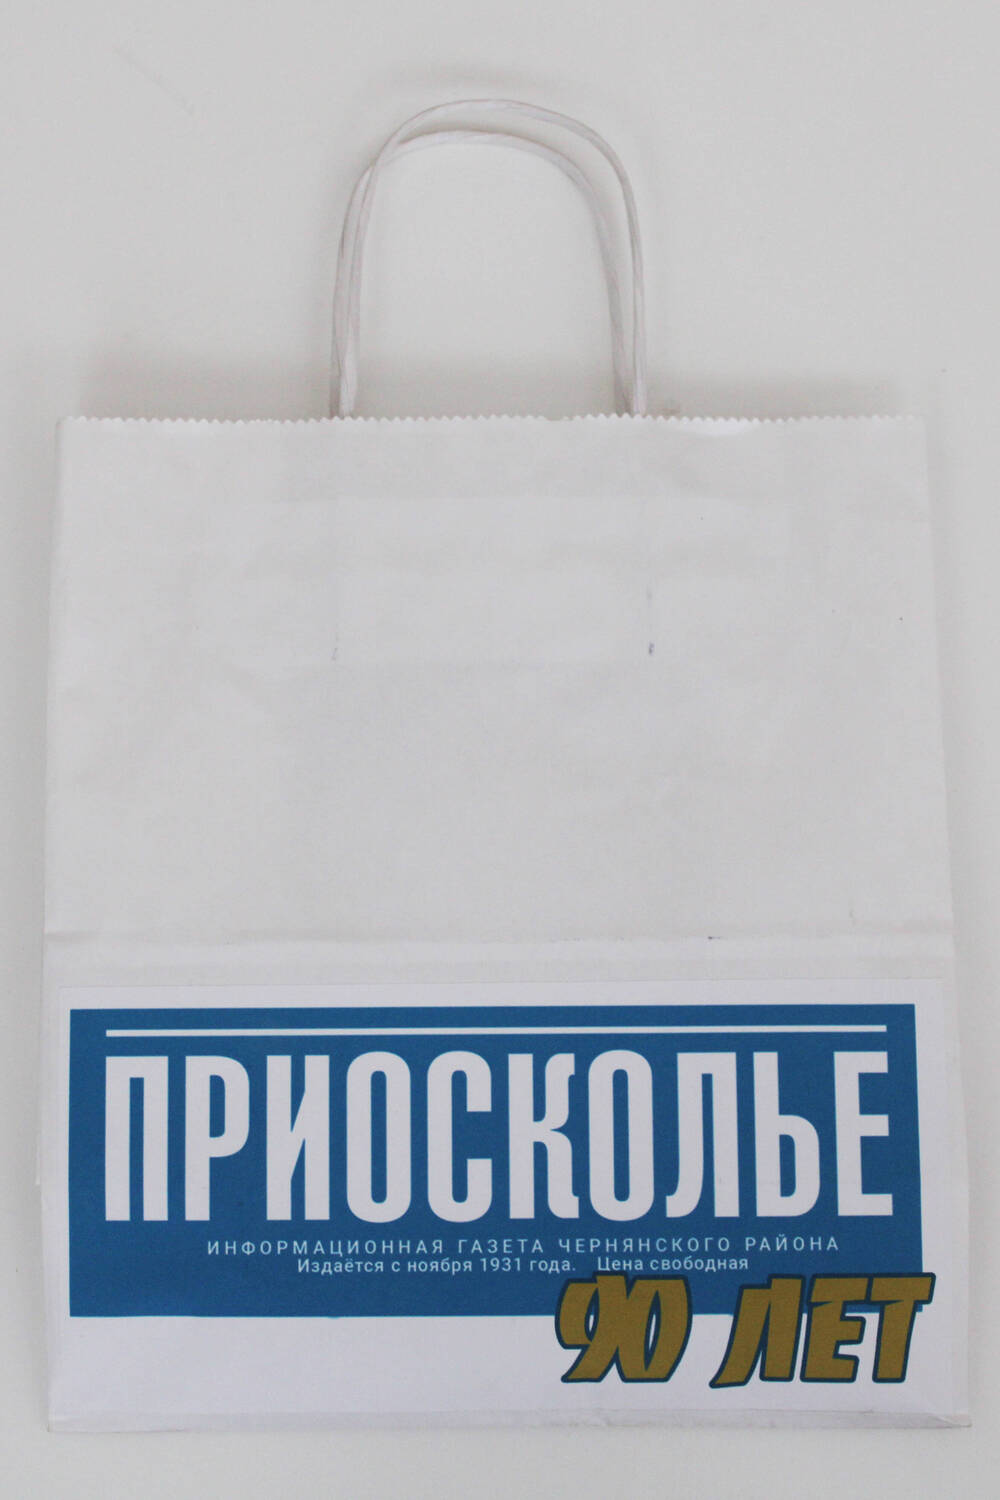 Пакет фирменный бумажный Приосколье.